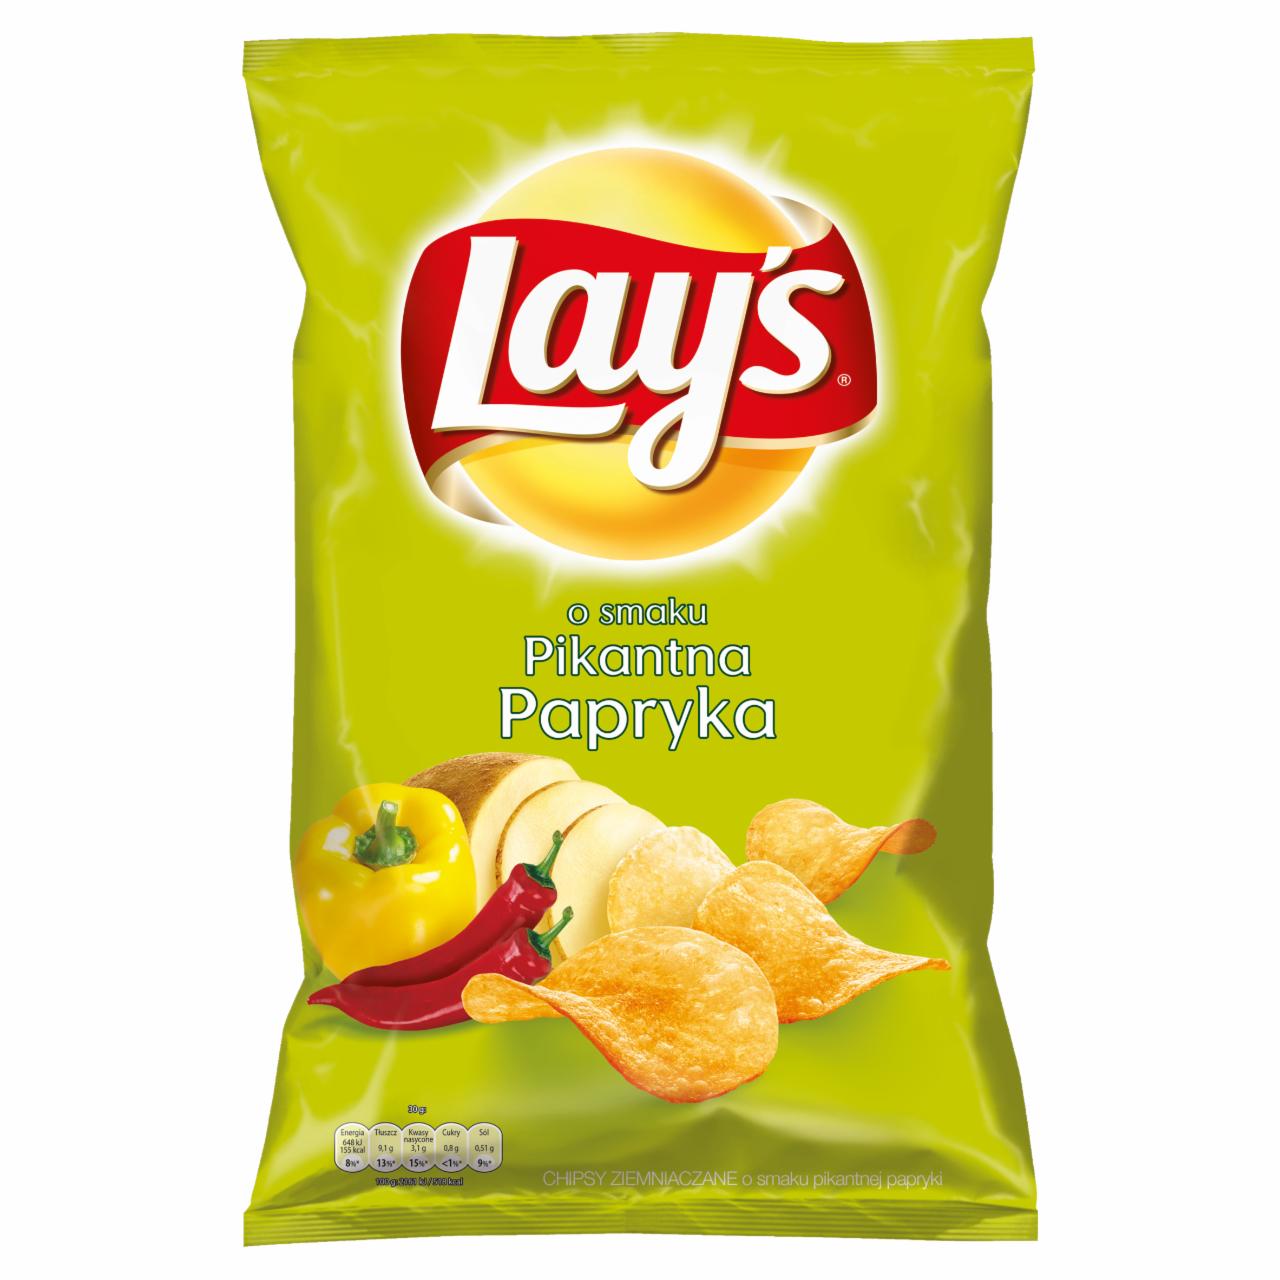 Zdjęcia - Lay's o smaku Pikantna Papryka Chipsy ziemniaczane 150 g